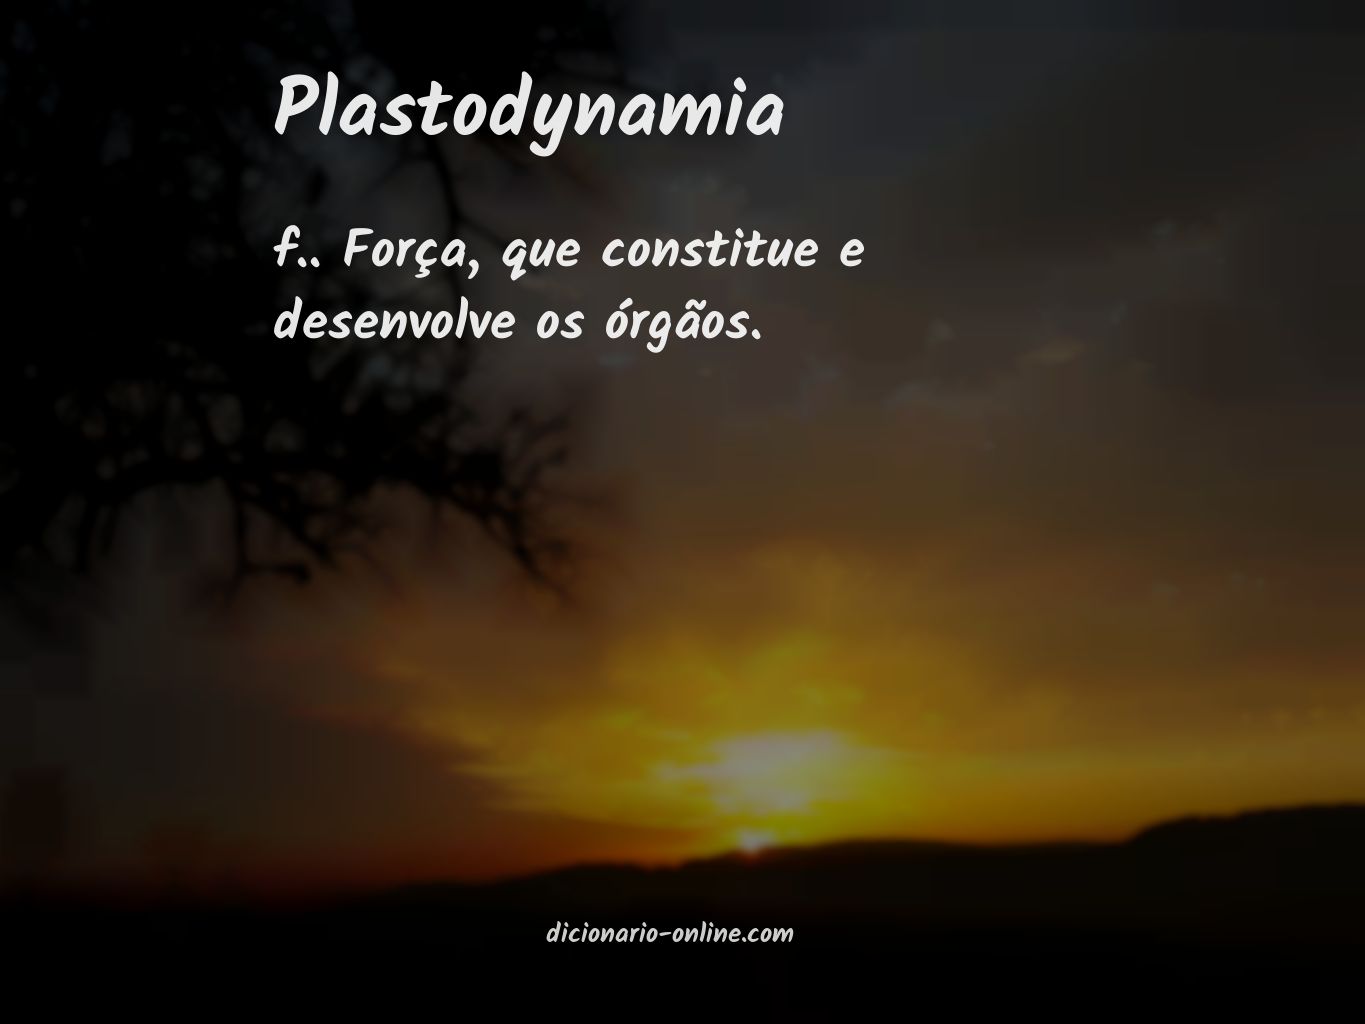 Significado de plastodynamia